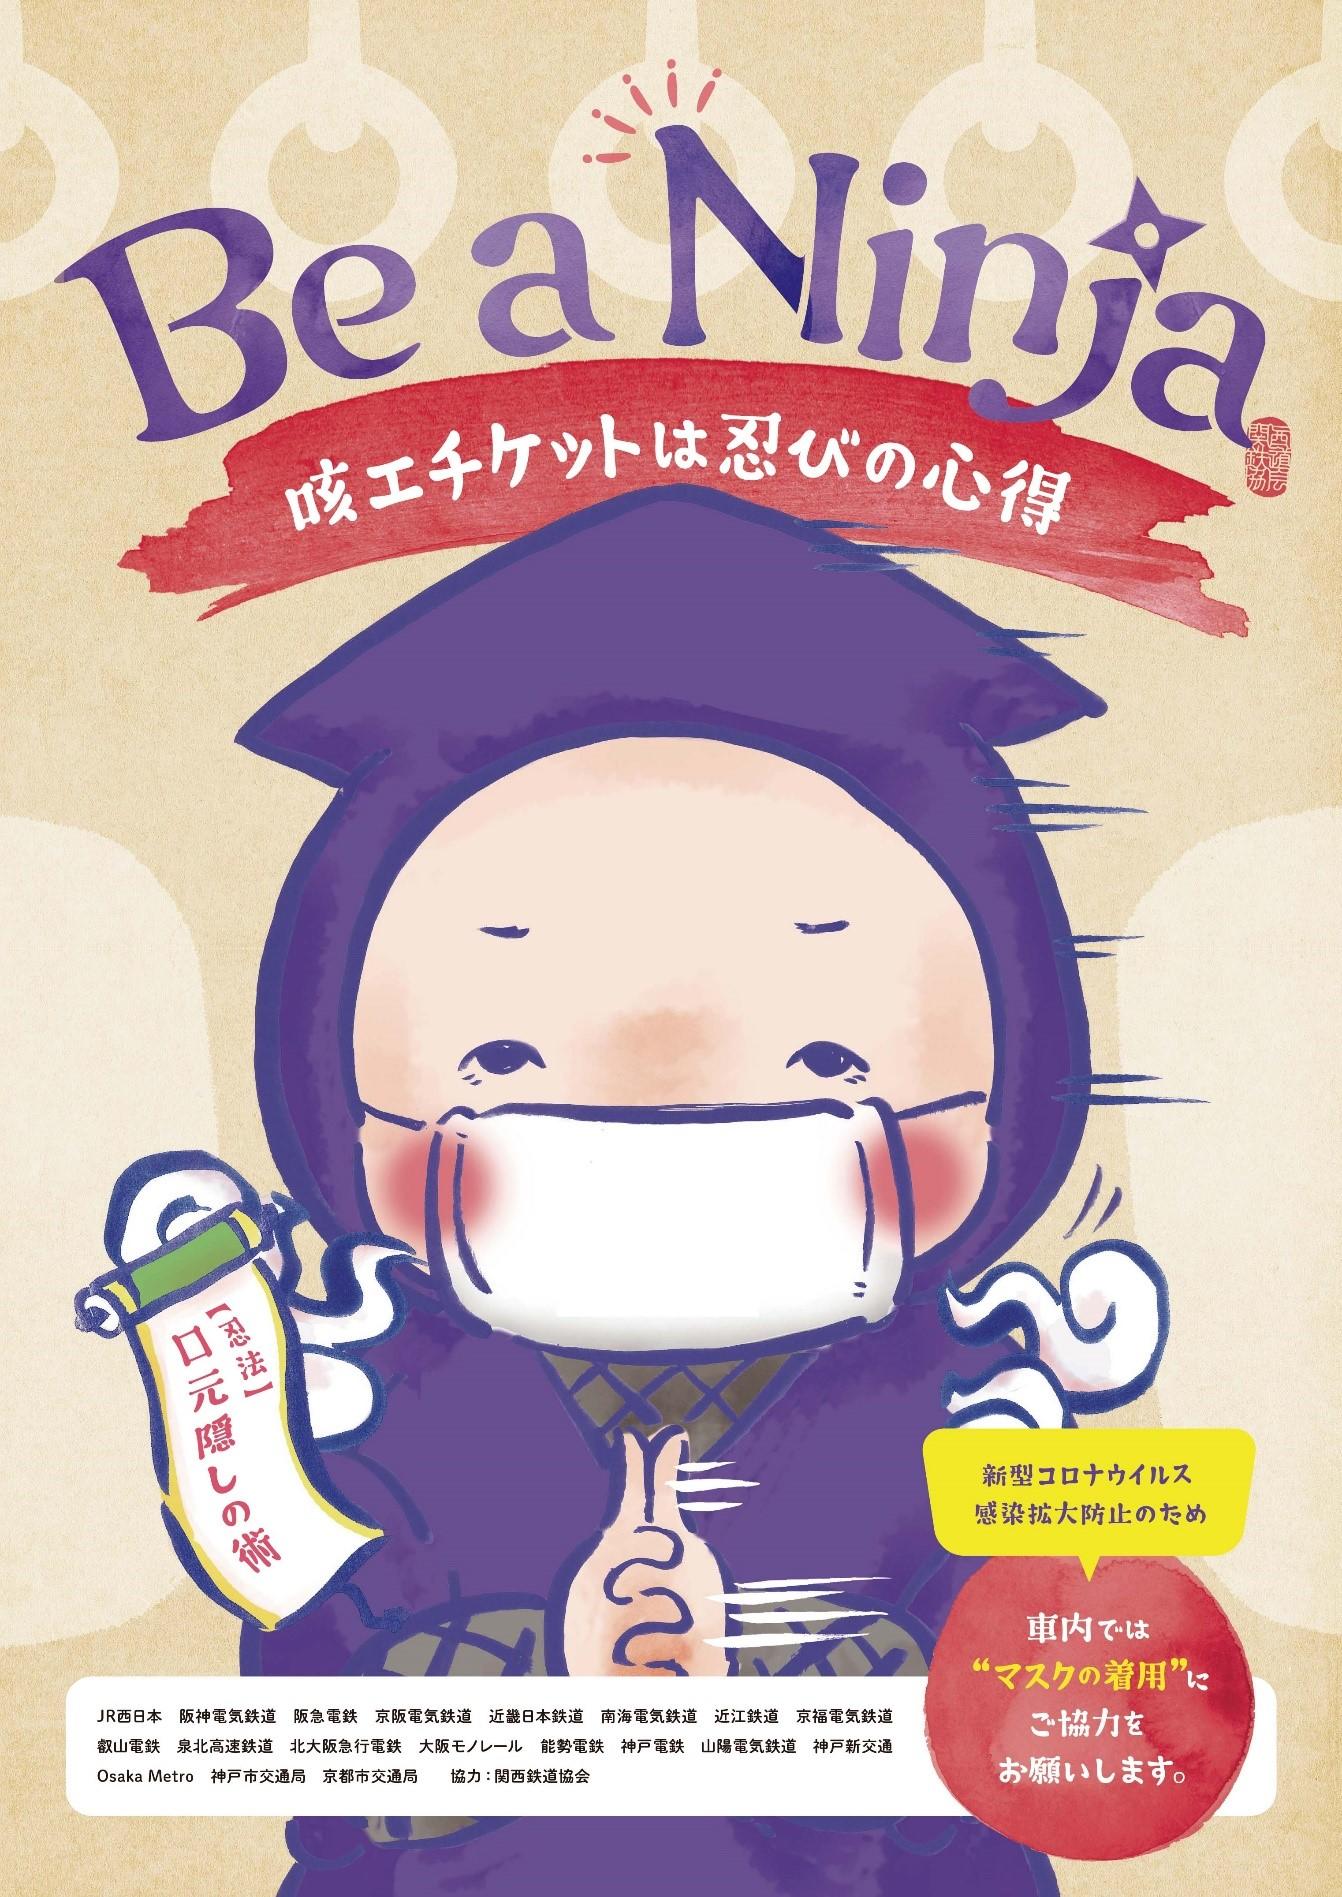 関西の鉄道事業者１９社局による共同マナーキャンペーン 咳やくしゃみの周囲への配慮 を共通テーマとしてポスターを掲出します Osaka Metro